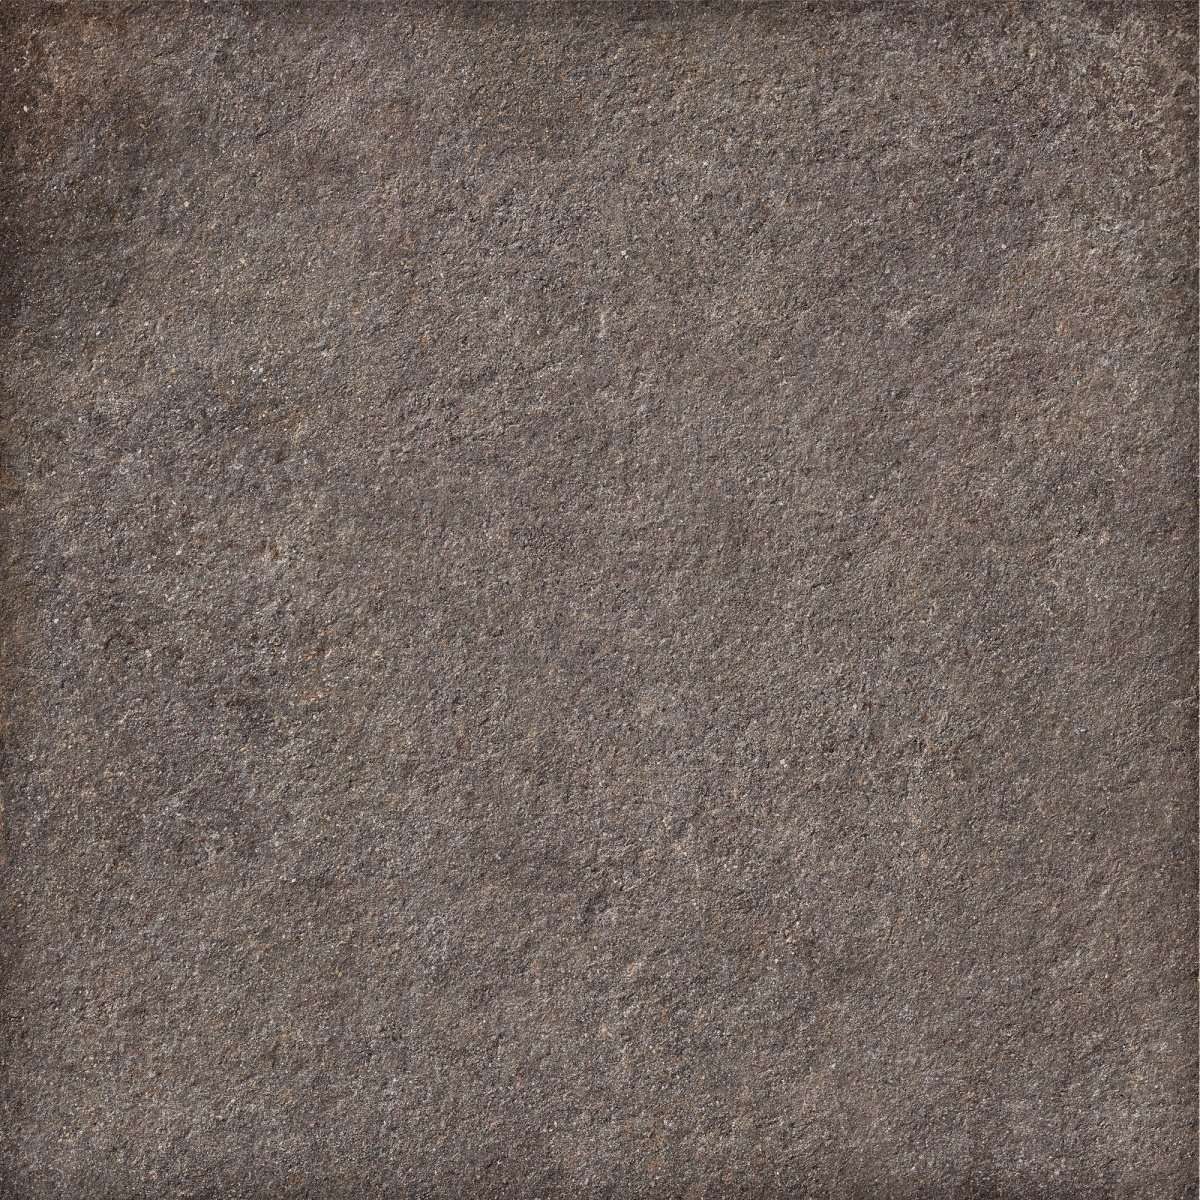 Толстый керамогранит 20мм Caesar Shapes Of It Lavis Textured 20mm AFNS, цвет коричневый, поверхность структурированная противоскользящая, квадрат, 1200x1200